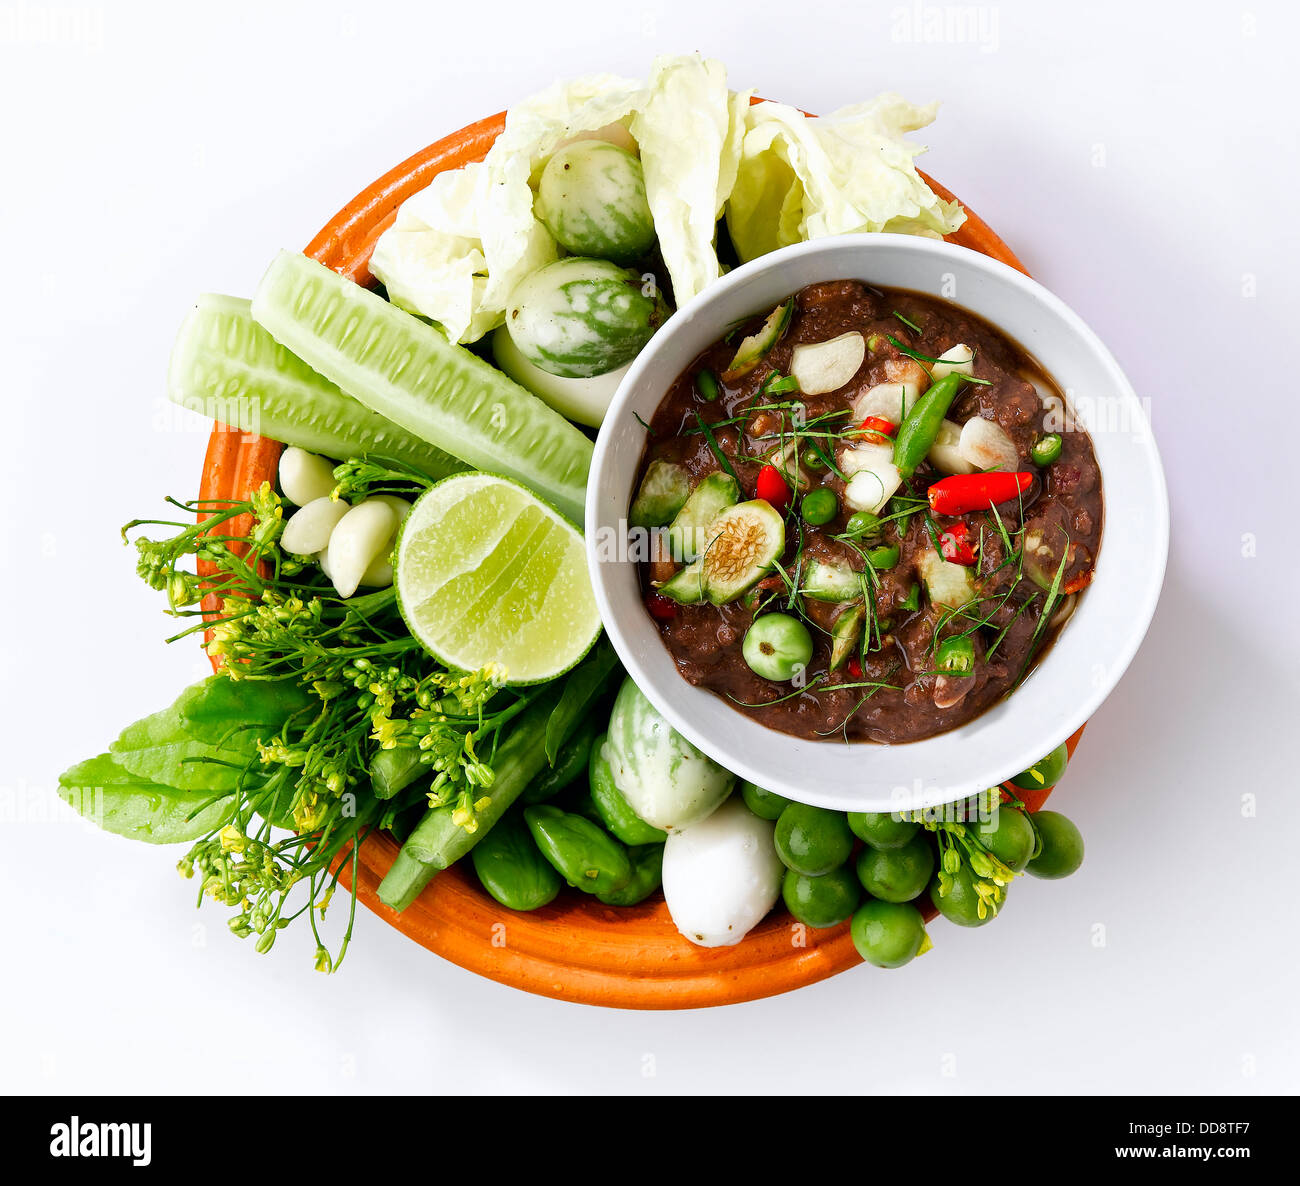 Cibo tailandese, gamberi pasta salsa piccante con verdure fresche Foto Stock